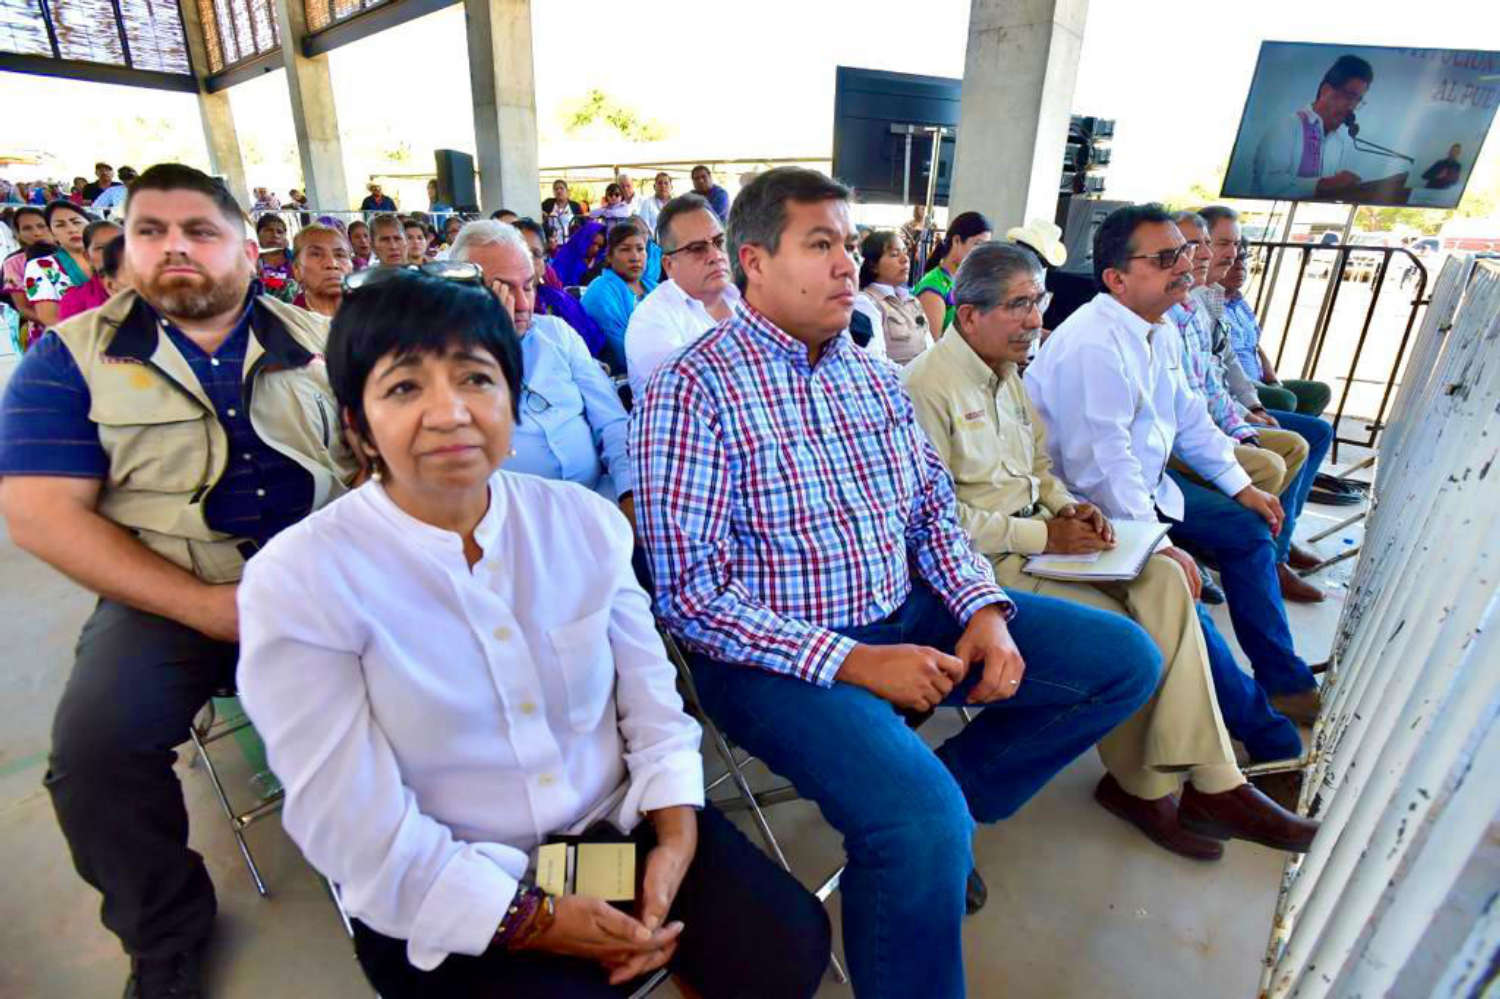 Histórico: presidente de la República firma decreto para restitución de tierras a pueblos yaquis.